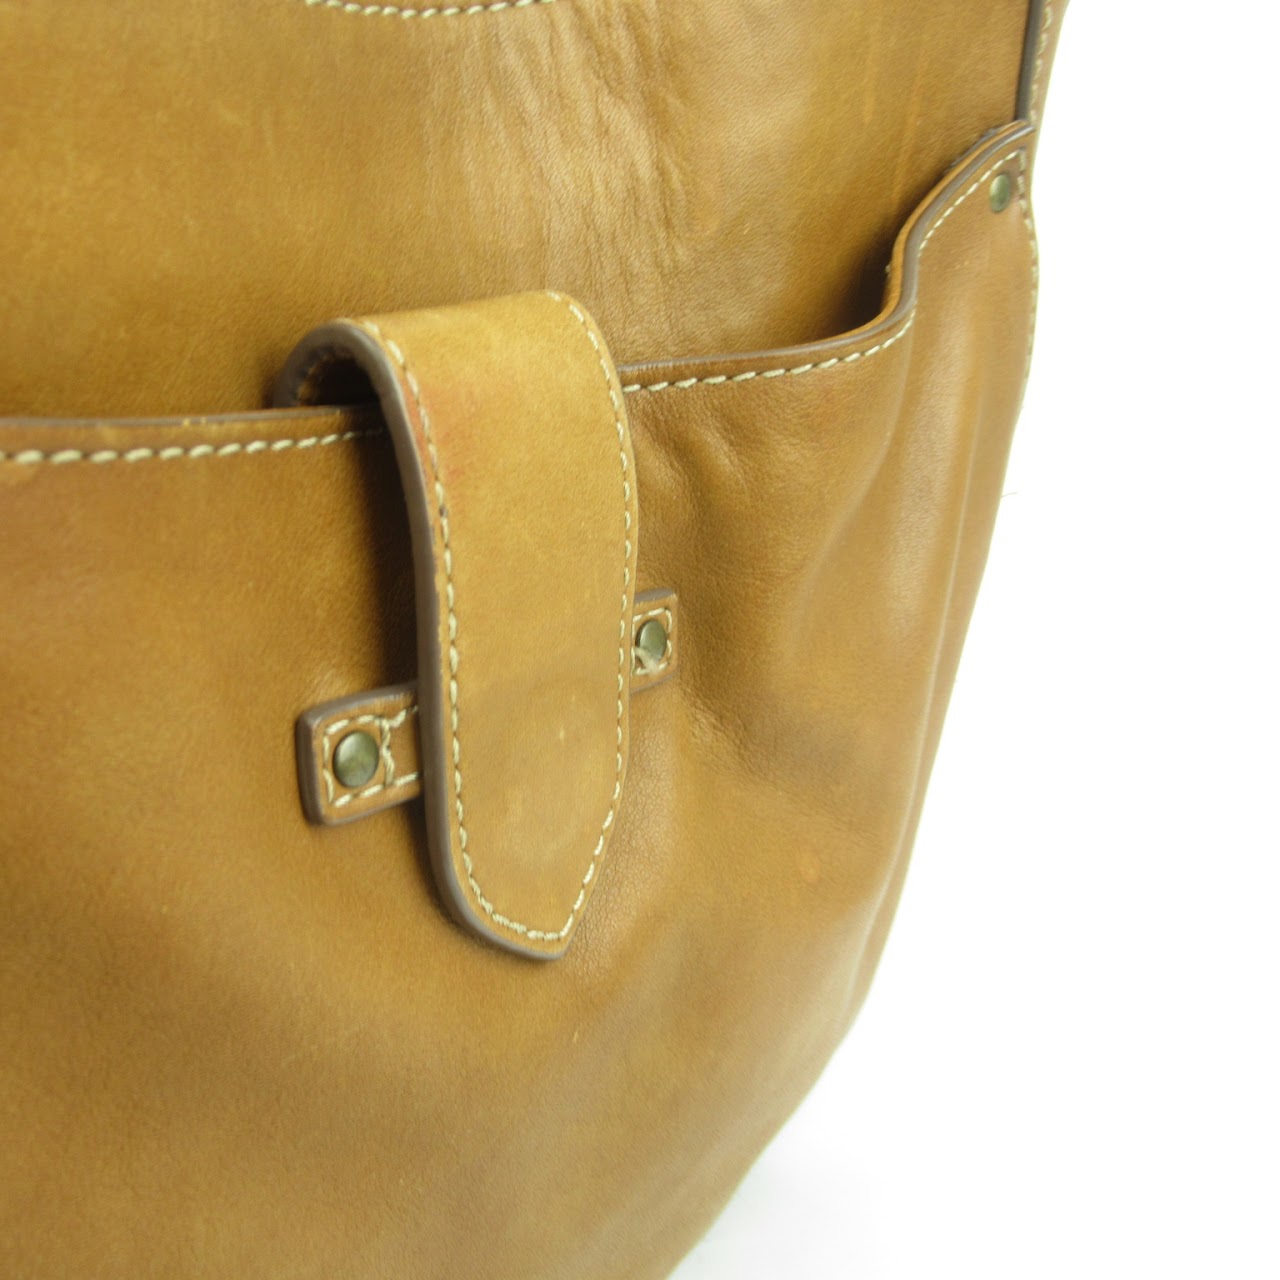 Frye Leather Shoulder Bag